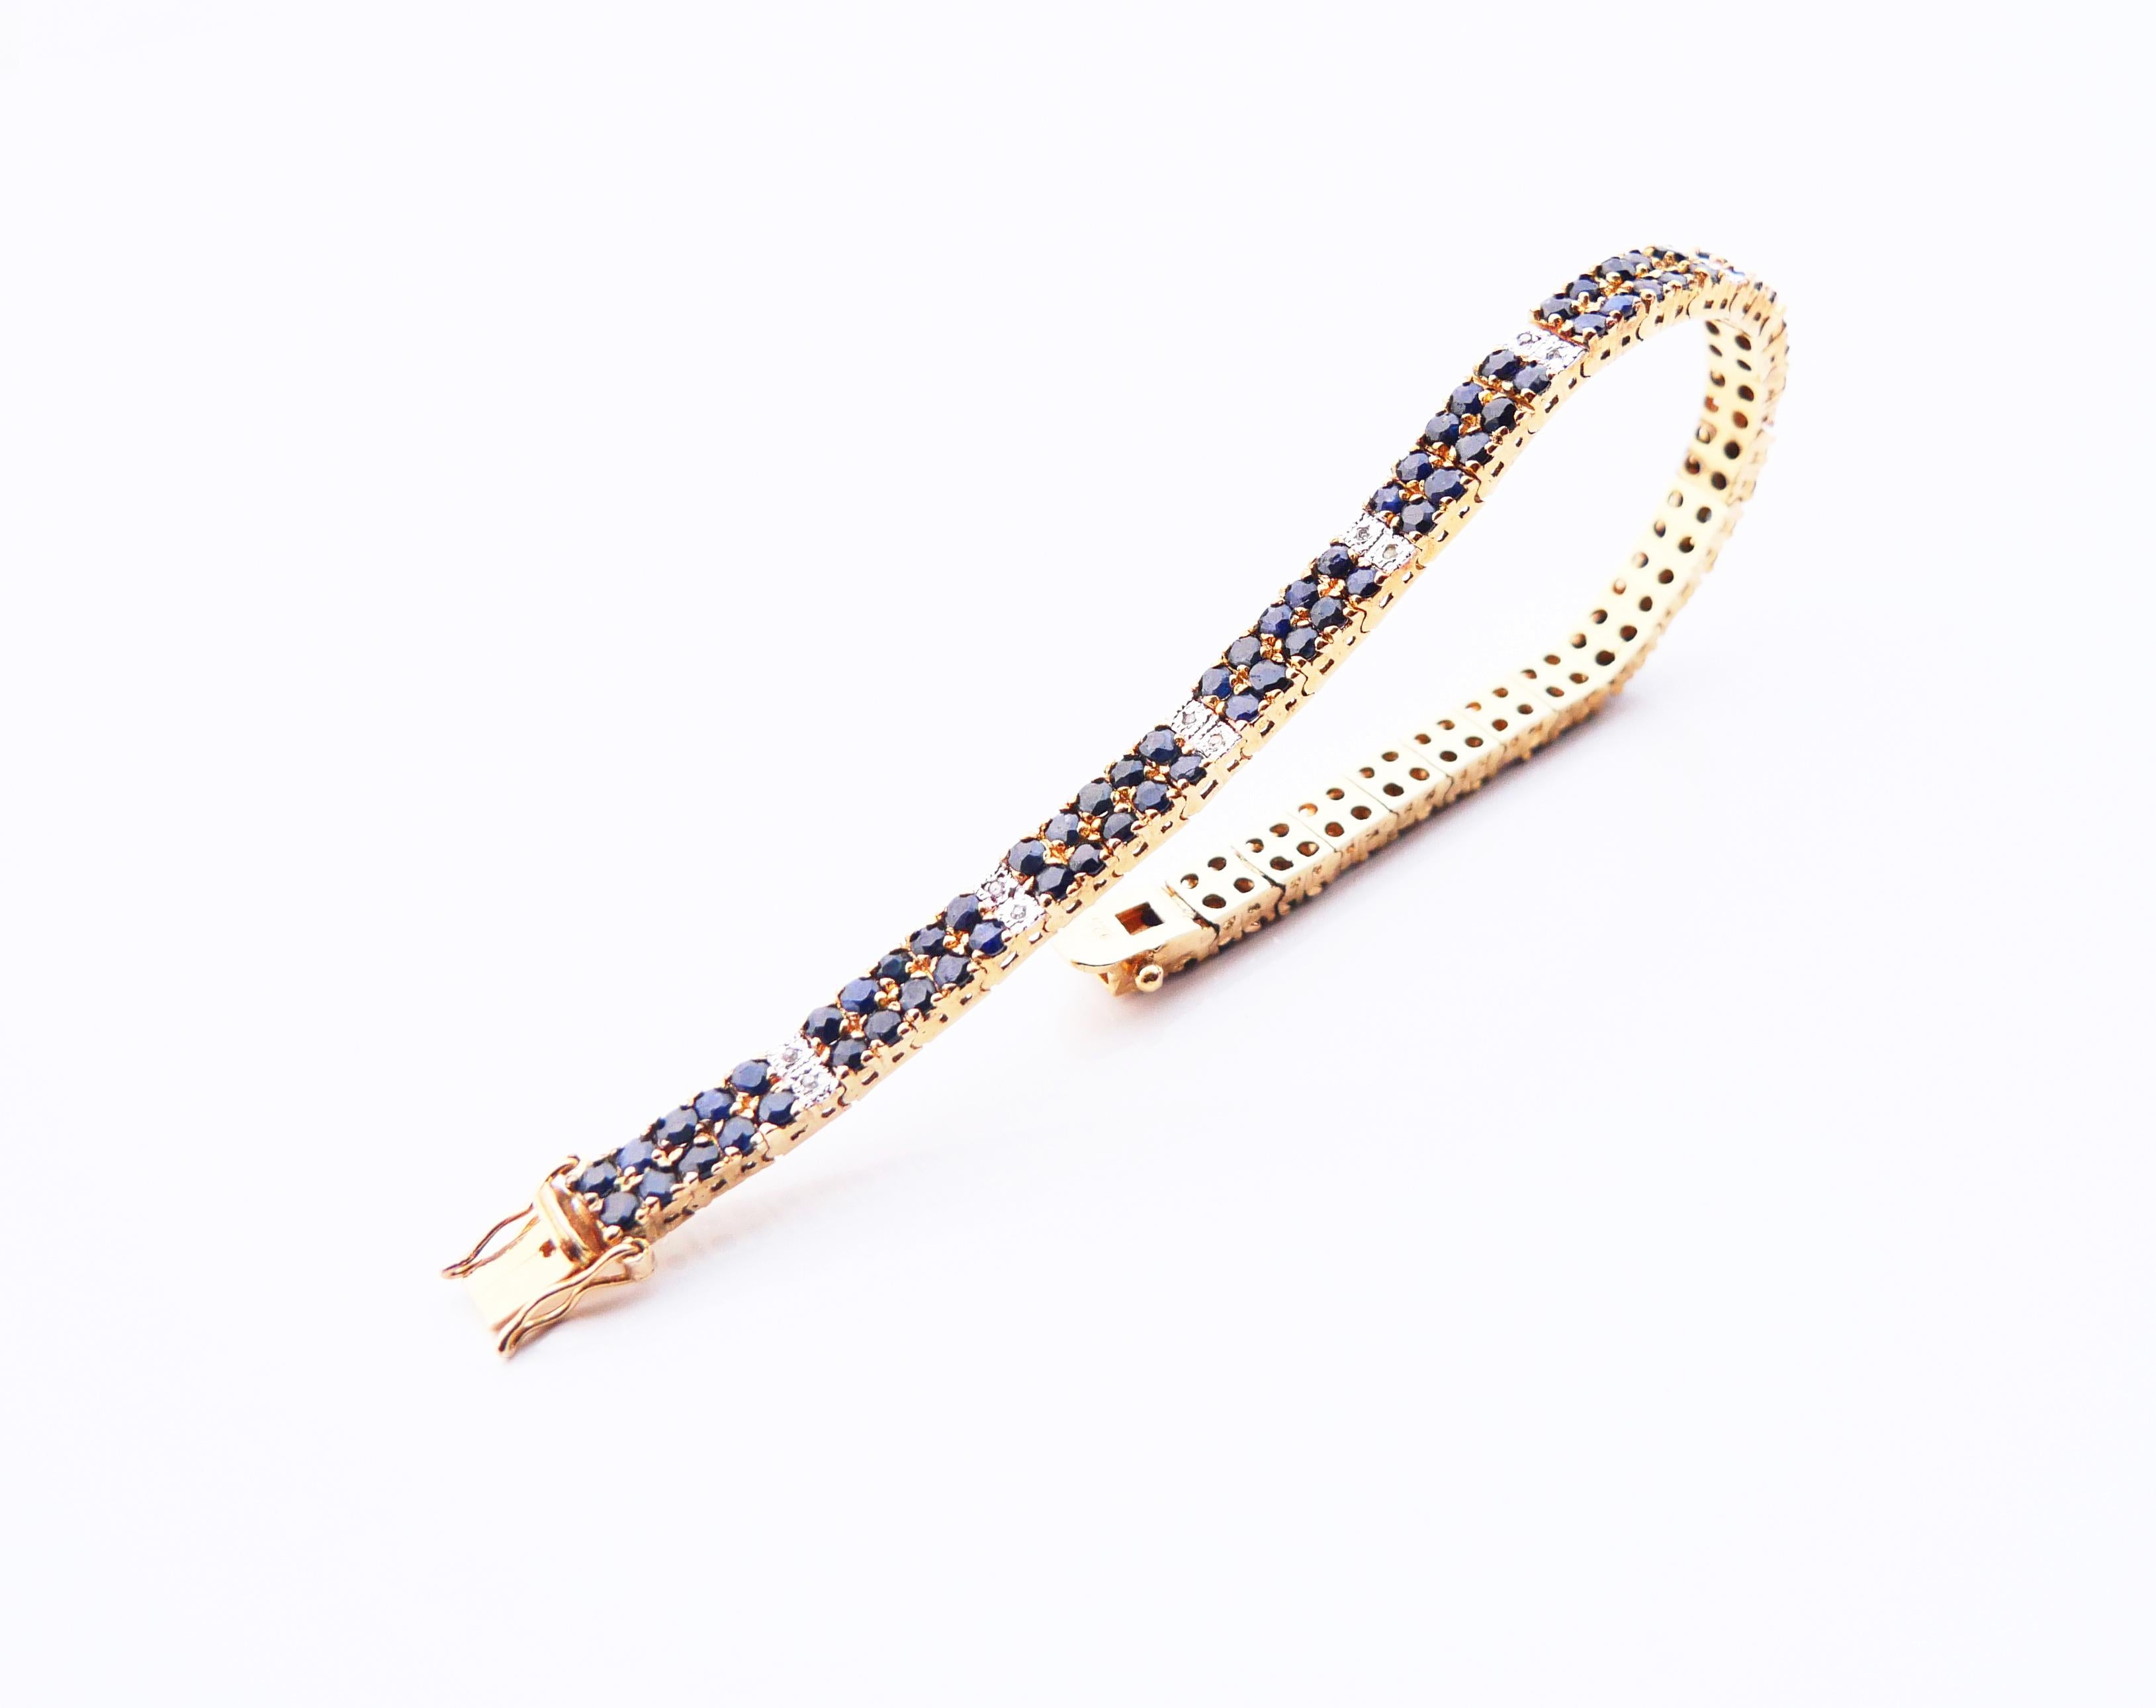 Flexibles Armband aus massivem 925er Silber / vergoldet oder vergoldet mit 110 natürlichen blauen Saphiren mit Diamantschliff und 22 Diamanten mit Diamantschliff.
Jeder Saphirstein ist Ø 2,5 mm /0,08ct, die Steine weisen innere Einschlüsse und eine